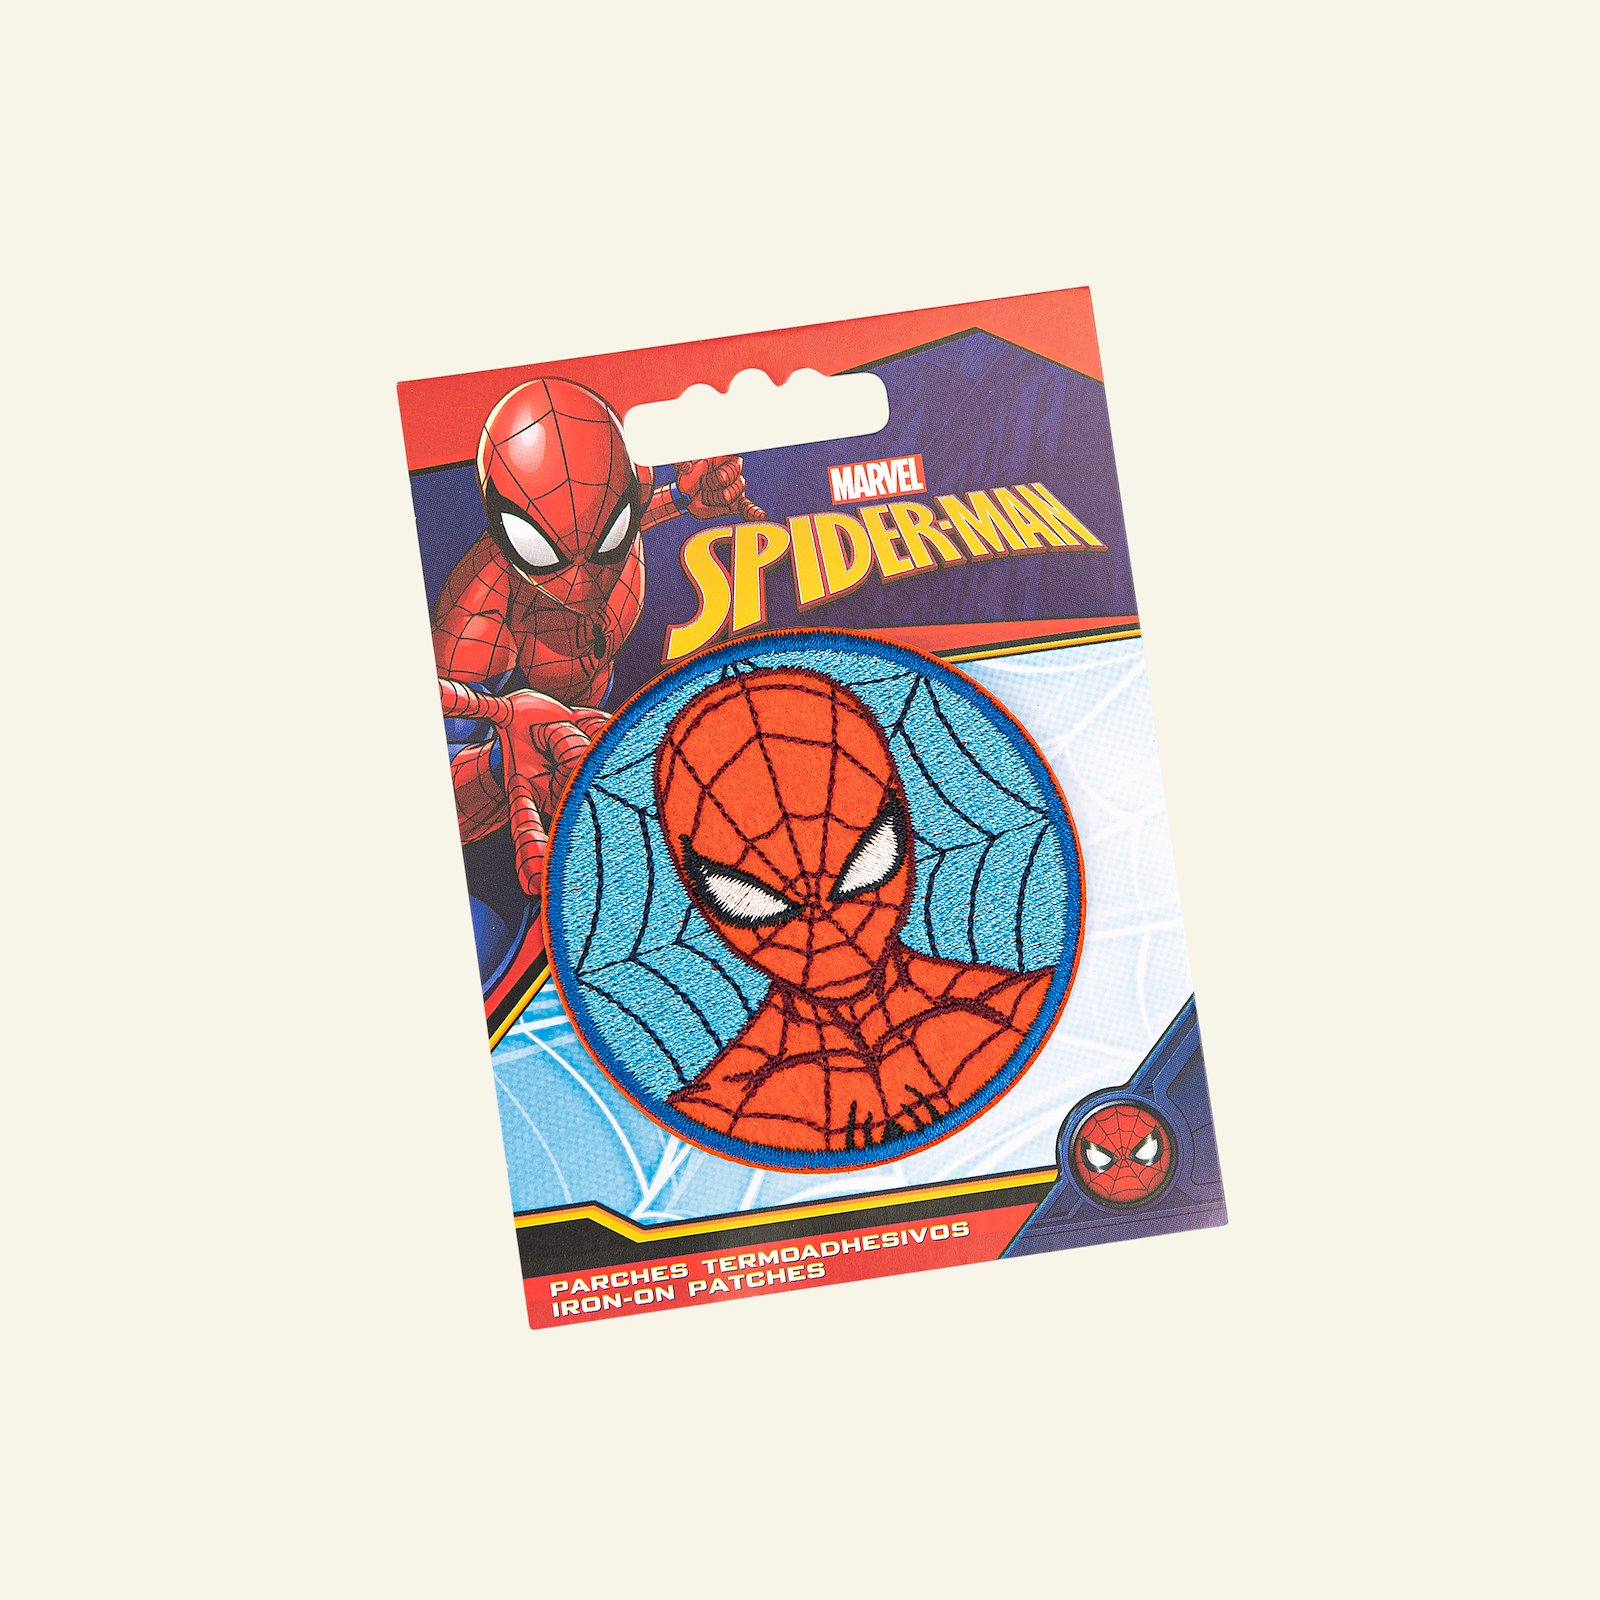 Symærke Spiderman 65mm rød/blå 1stk 24950_pack_b